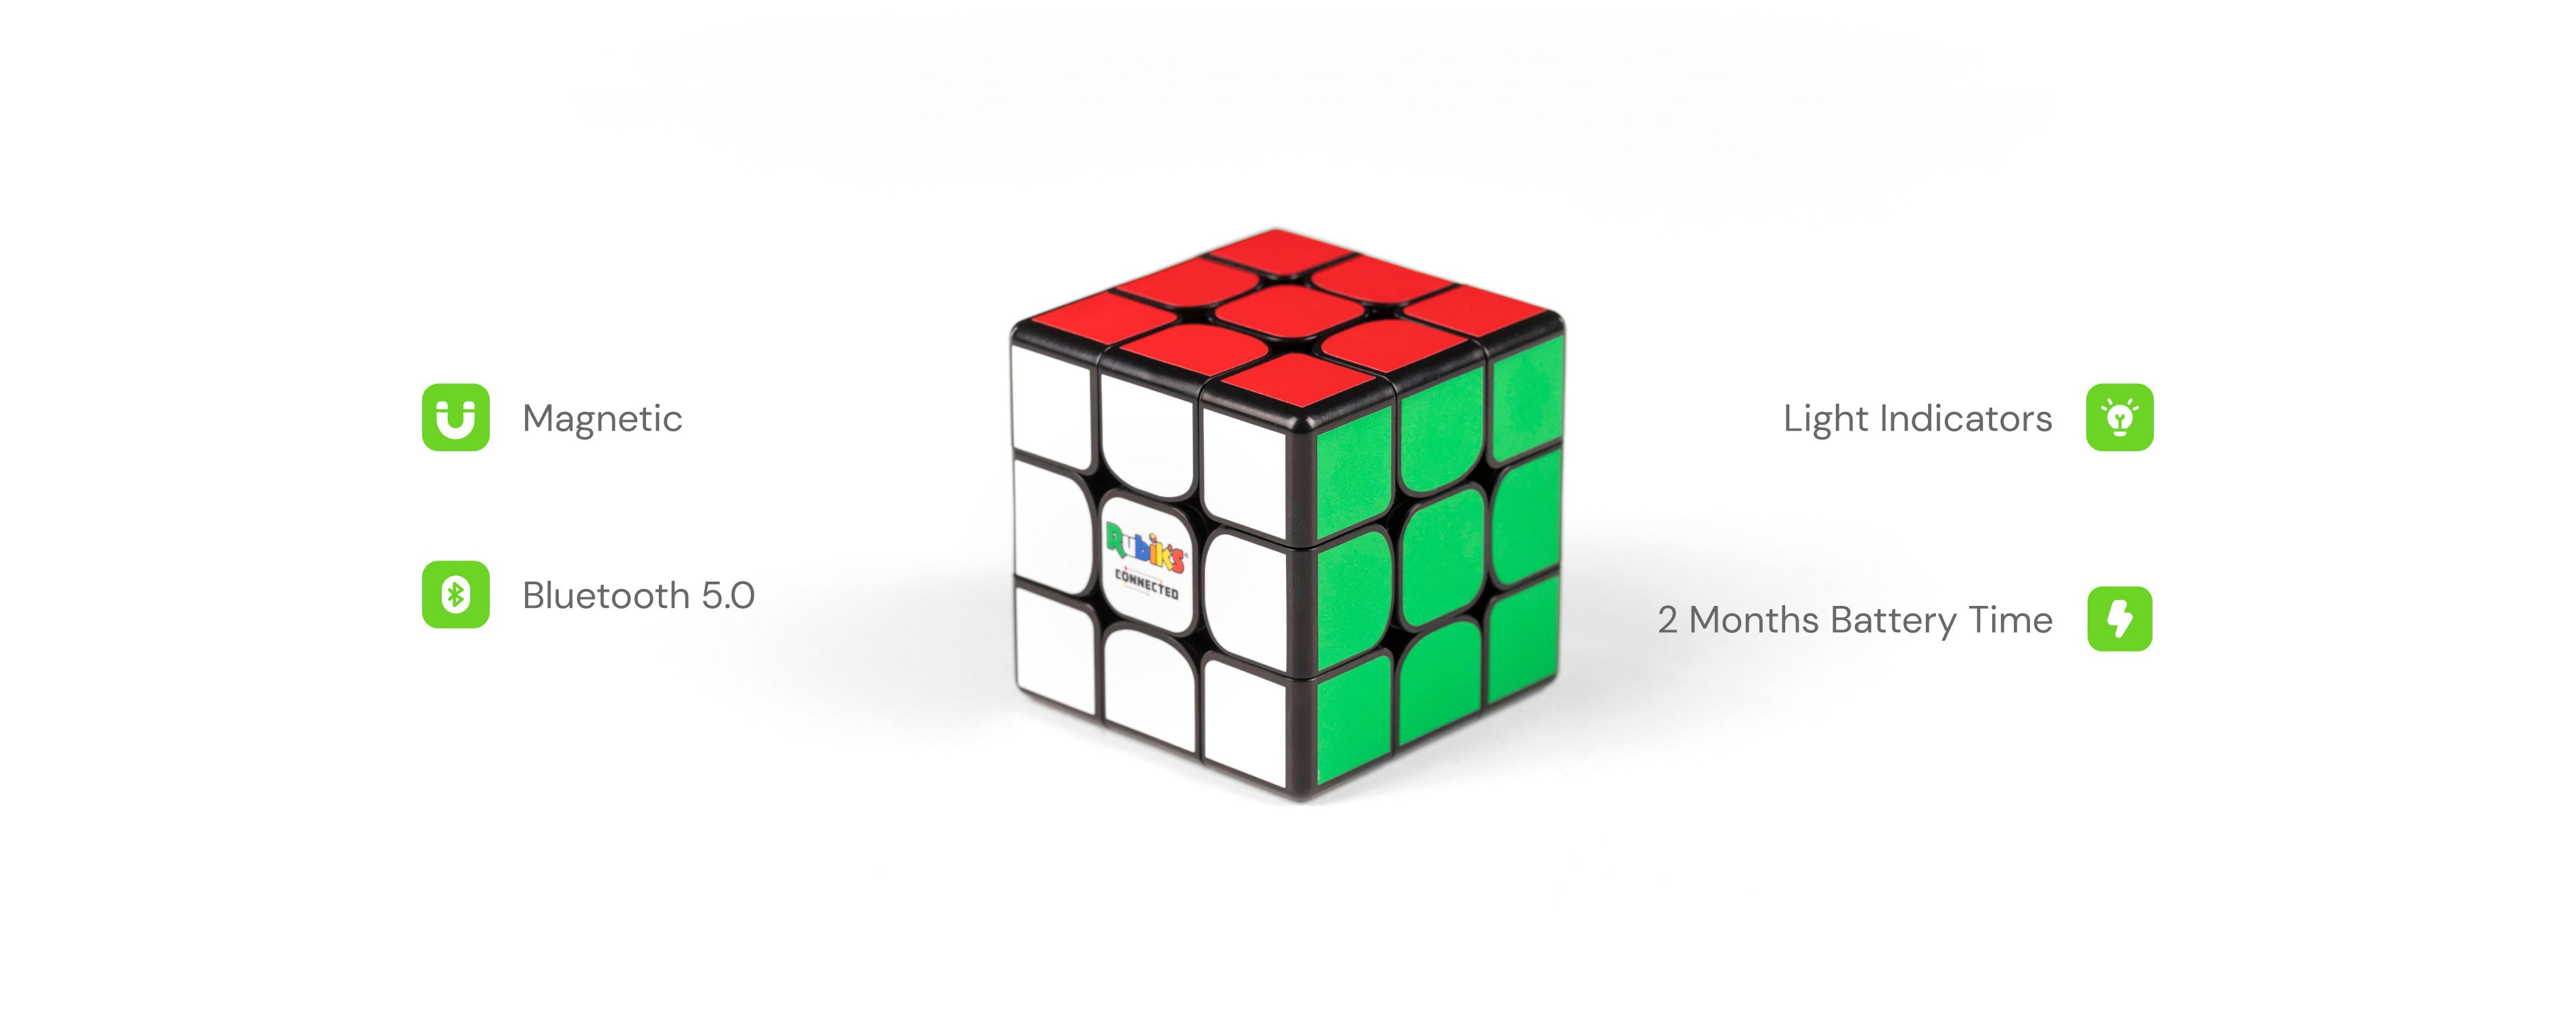 Rubiks connected features desktop